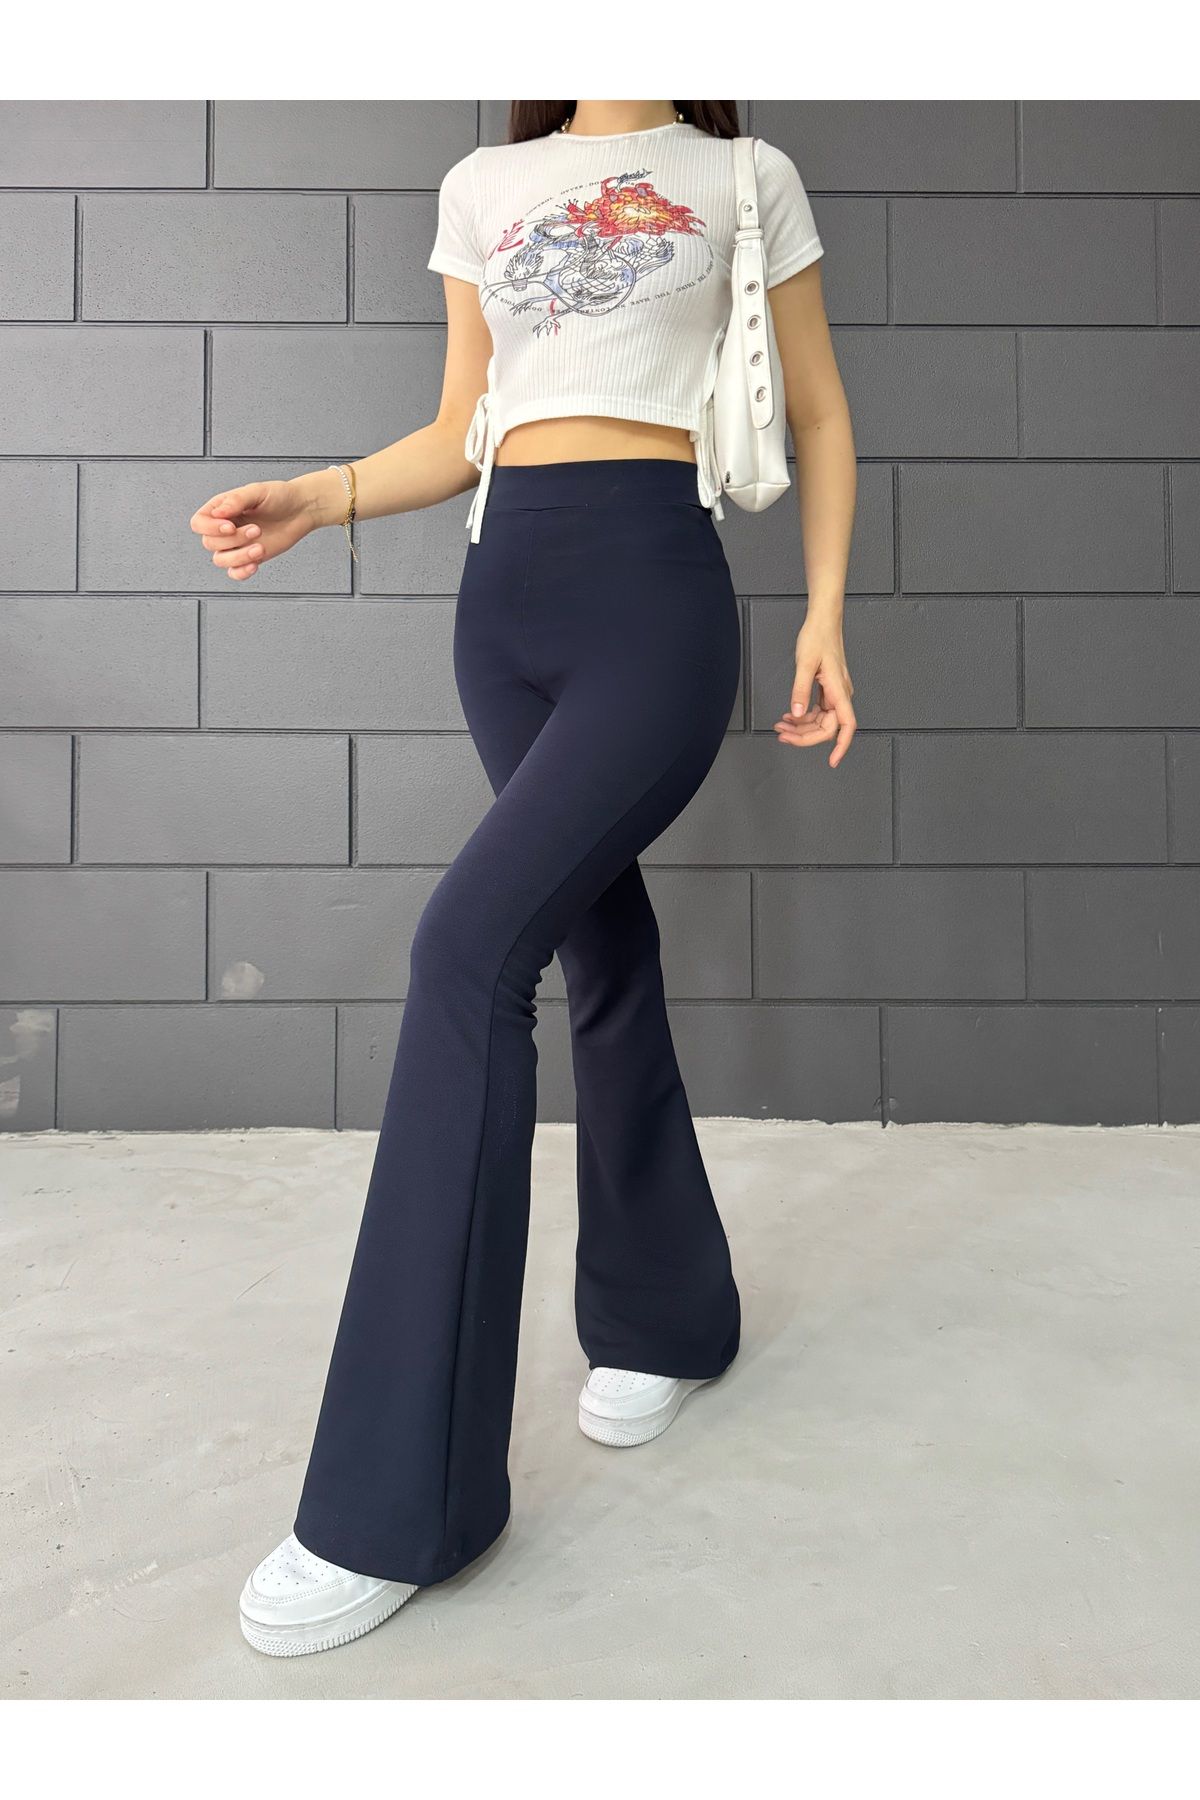 RuyaMood Kadın Lacivert İspanyol Paça Krep Yüksek Bel Likralı Toparlayıcı Tayt Pantolon